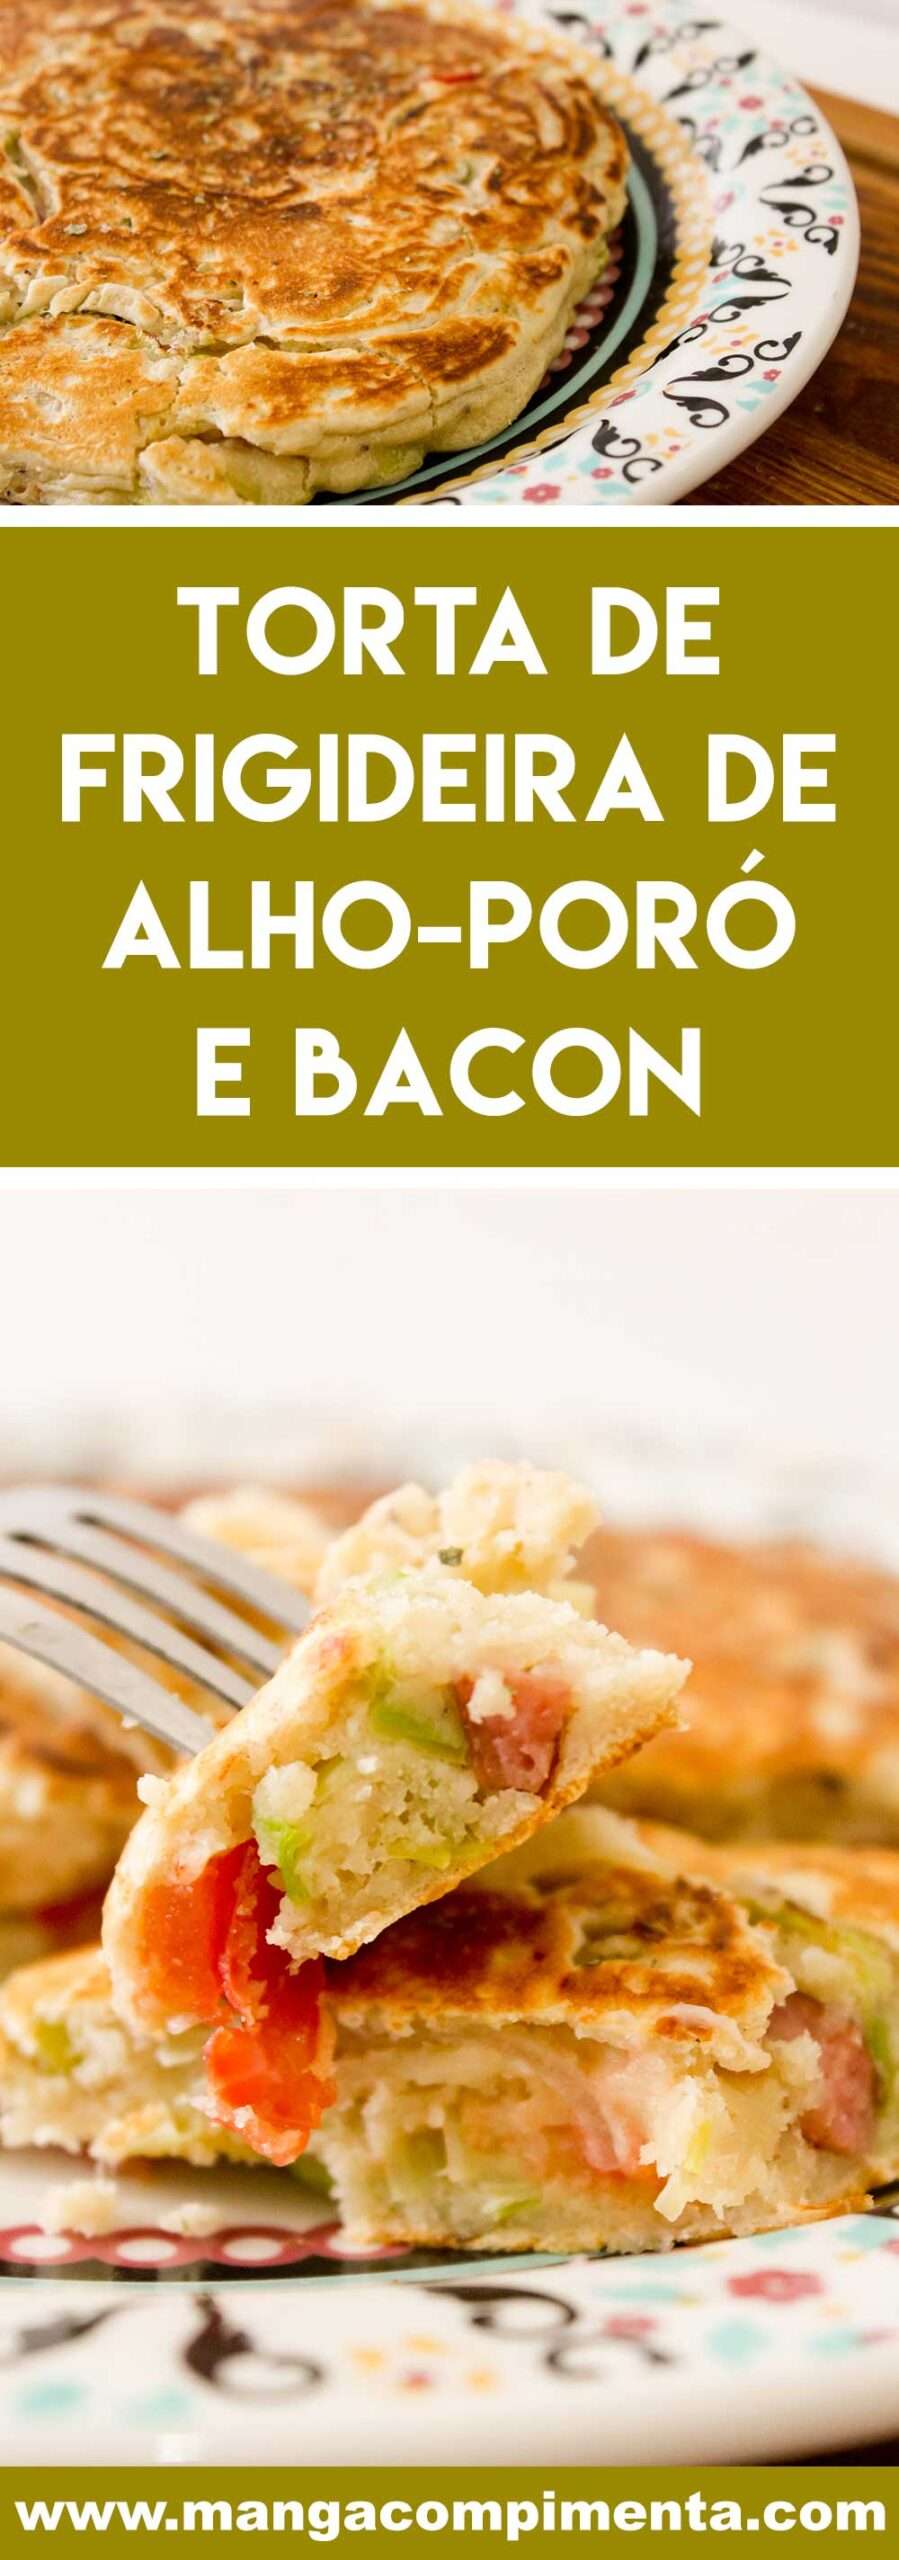 Receita de Torta de Frigideira de Alho-poró e Bacon - prepare um prato rápido e gostoso para o almoço da semana!